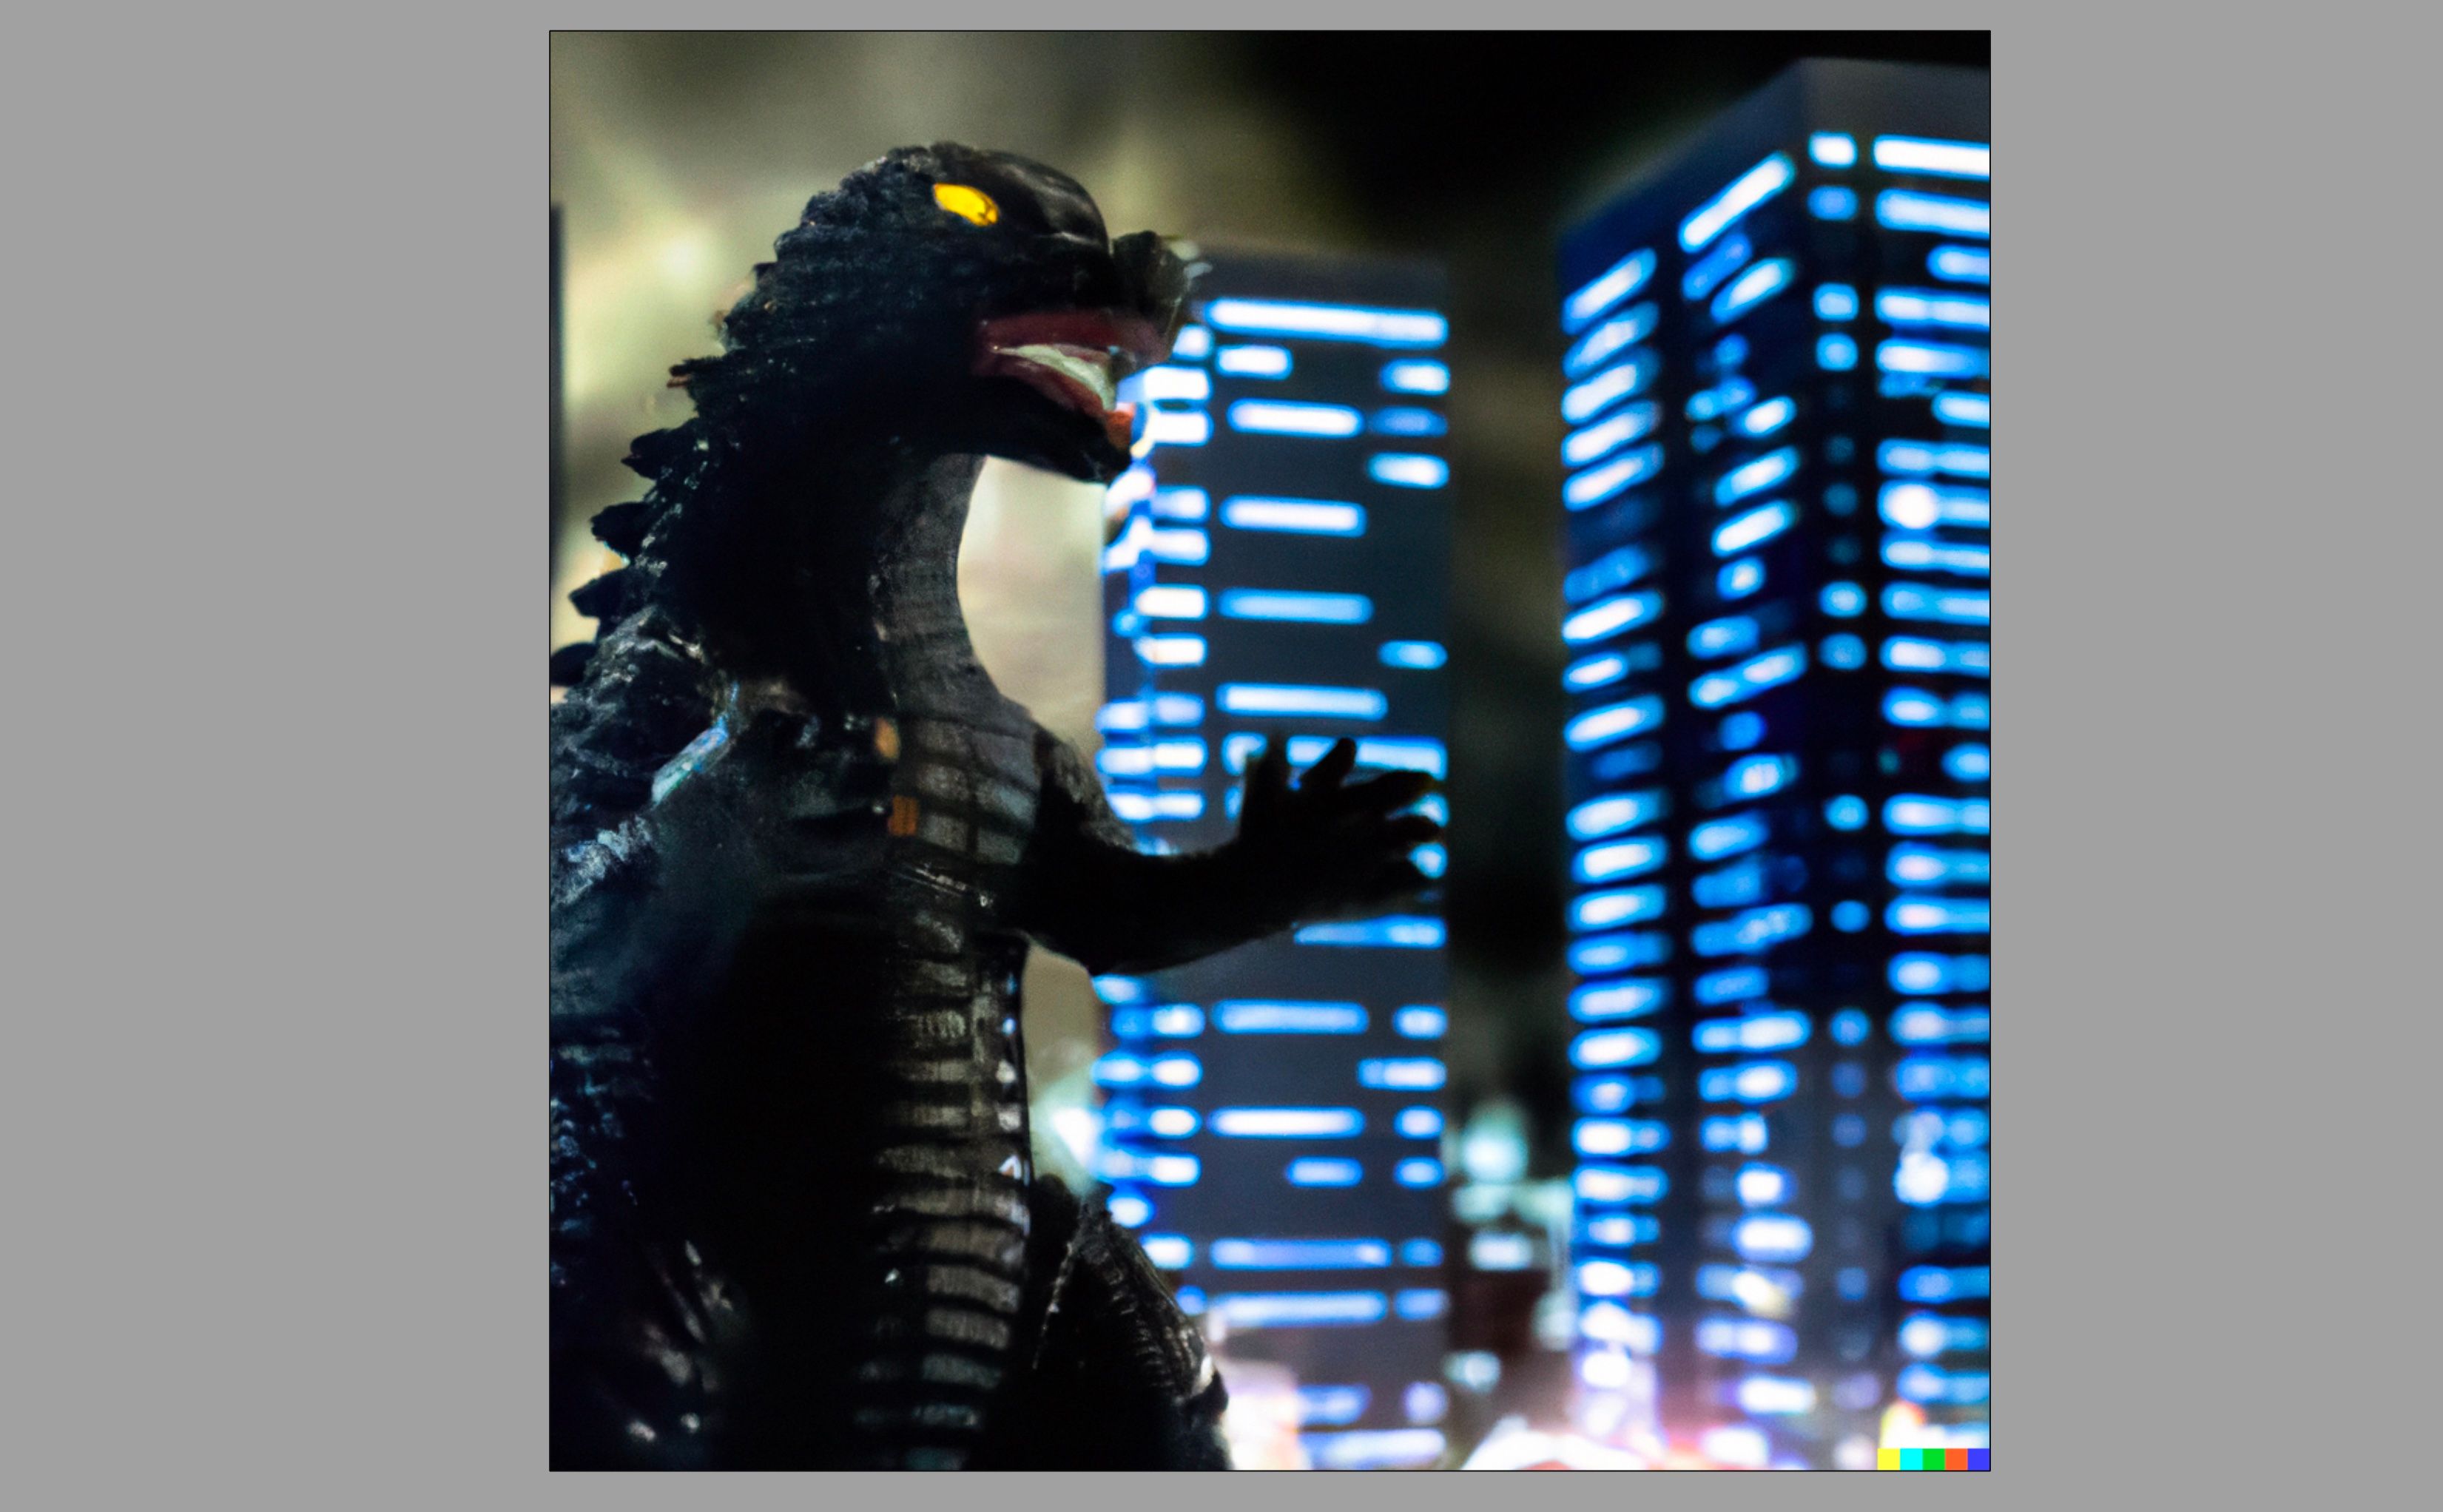 Imagem gerada por IA da estatueta de Godzilla contra uma cidade